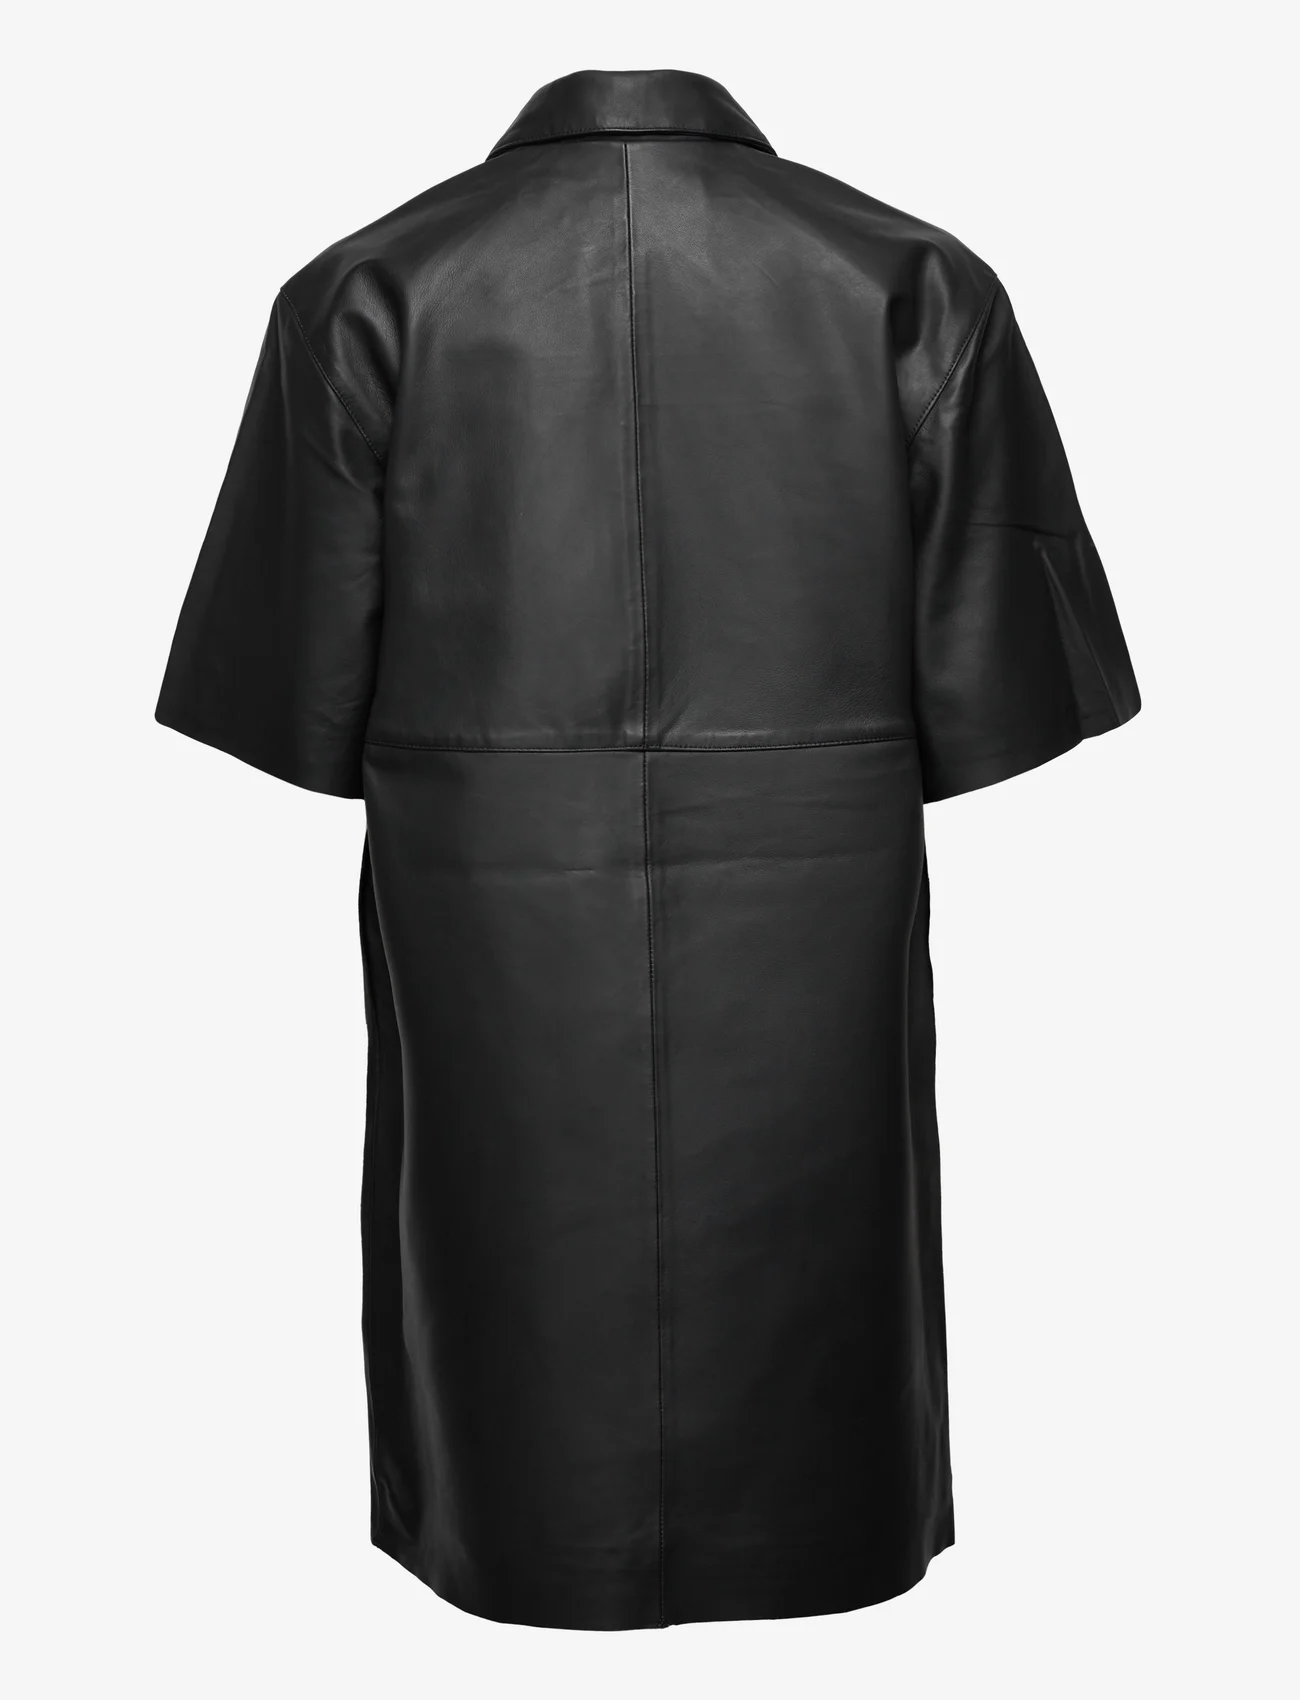 Selected Femme - SLFBERTA 2/4 SHORT LEATHER DRESS B - skjortekjoler - black - 1